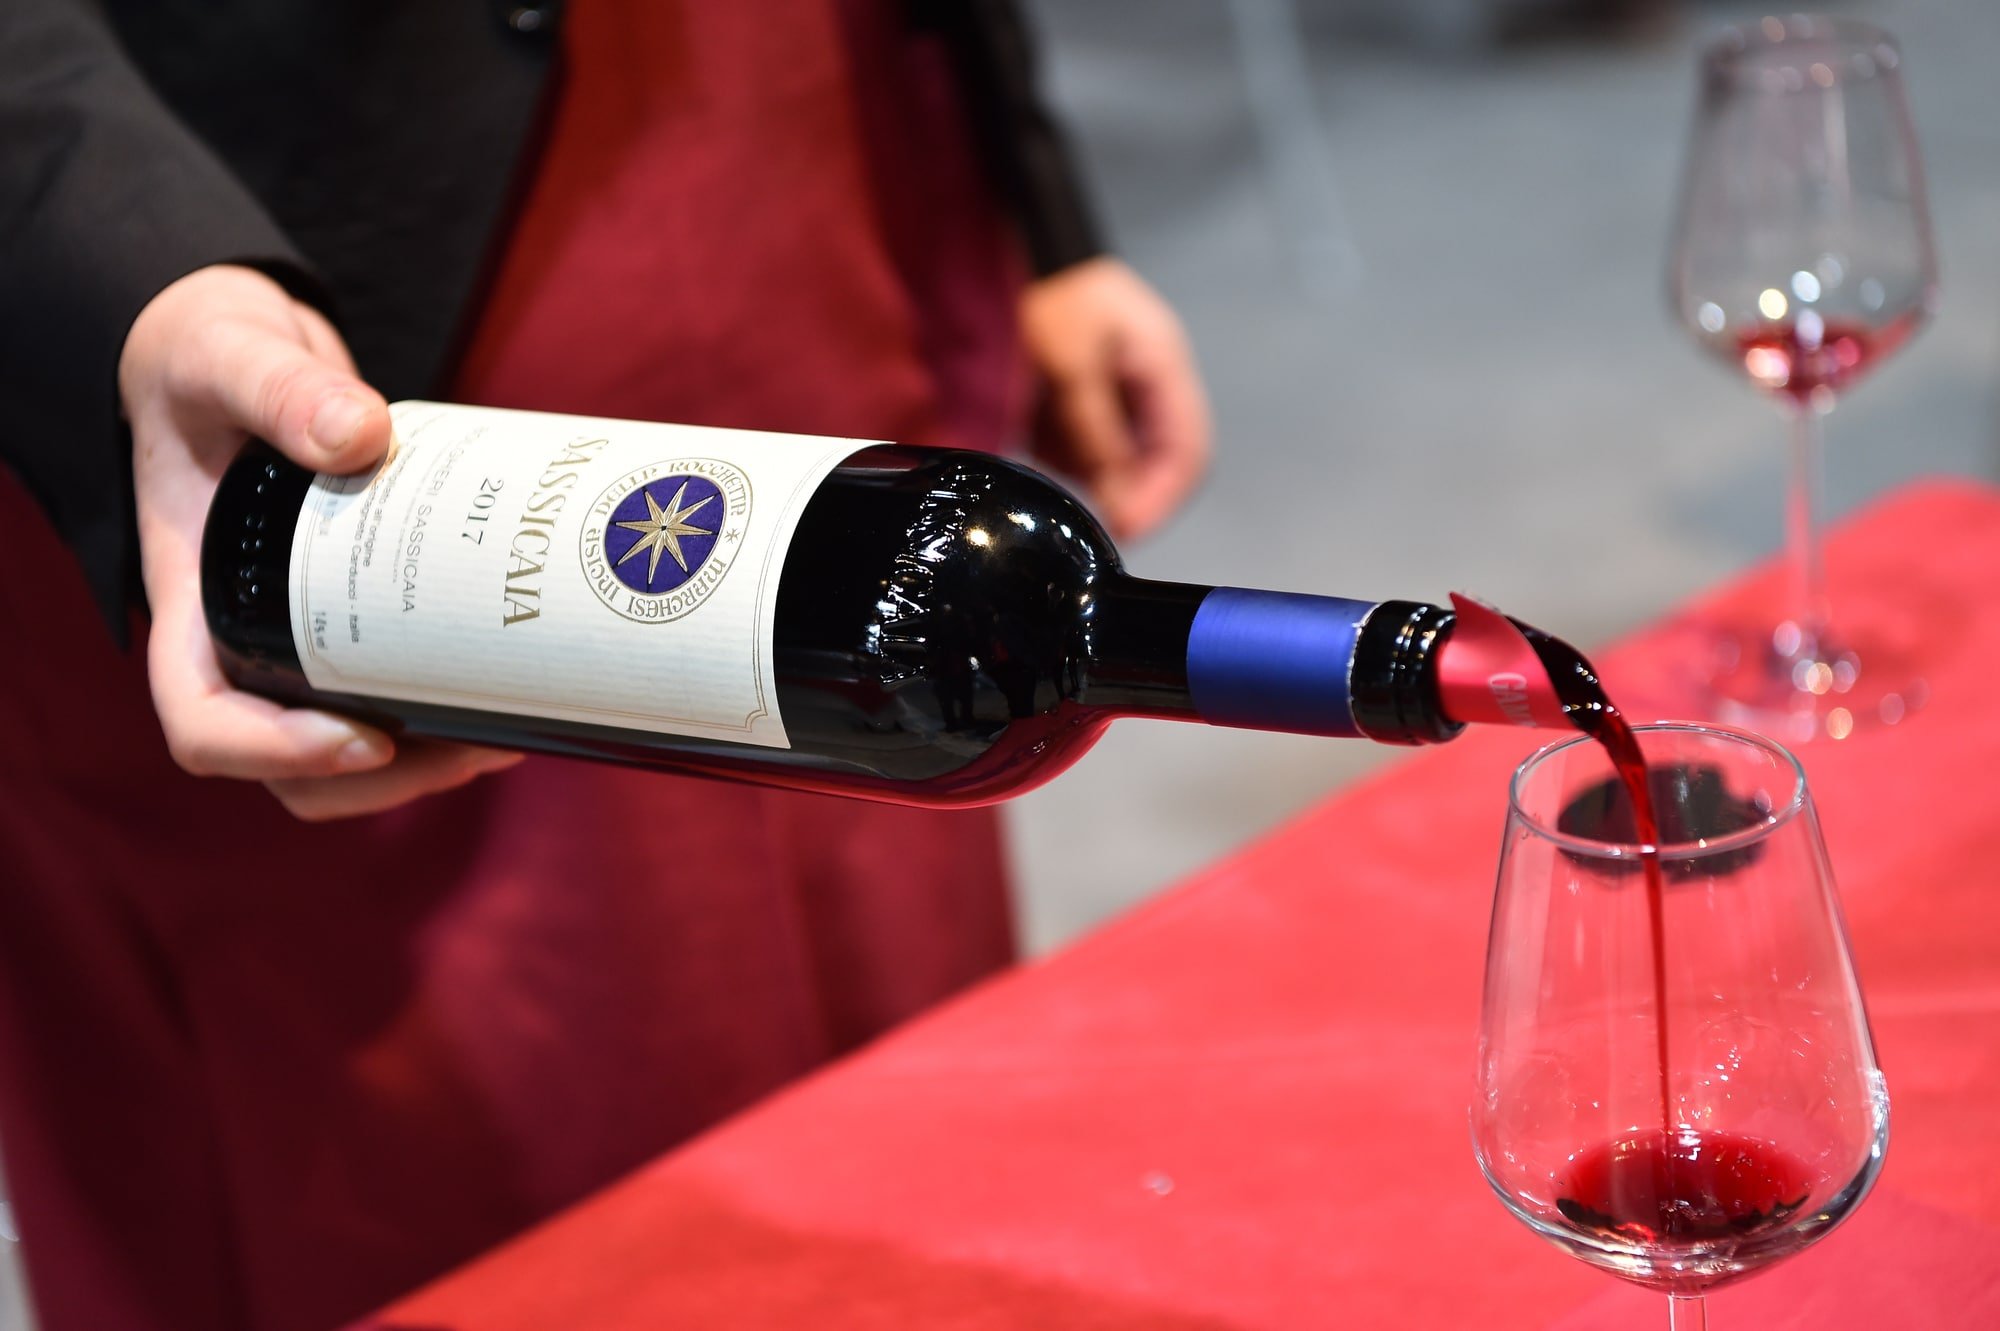 Køb vine fra Toscana, Italiens grønne hjerte, på god auktion priser. Det har en særlig plads i mange vinelskeres hjerter.